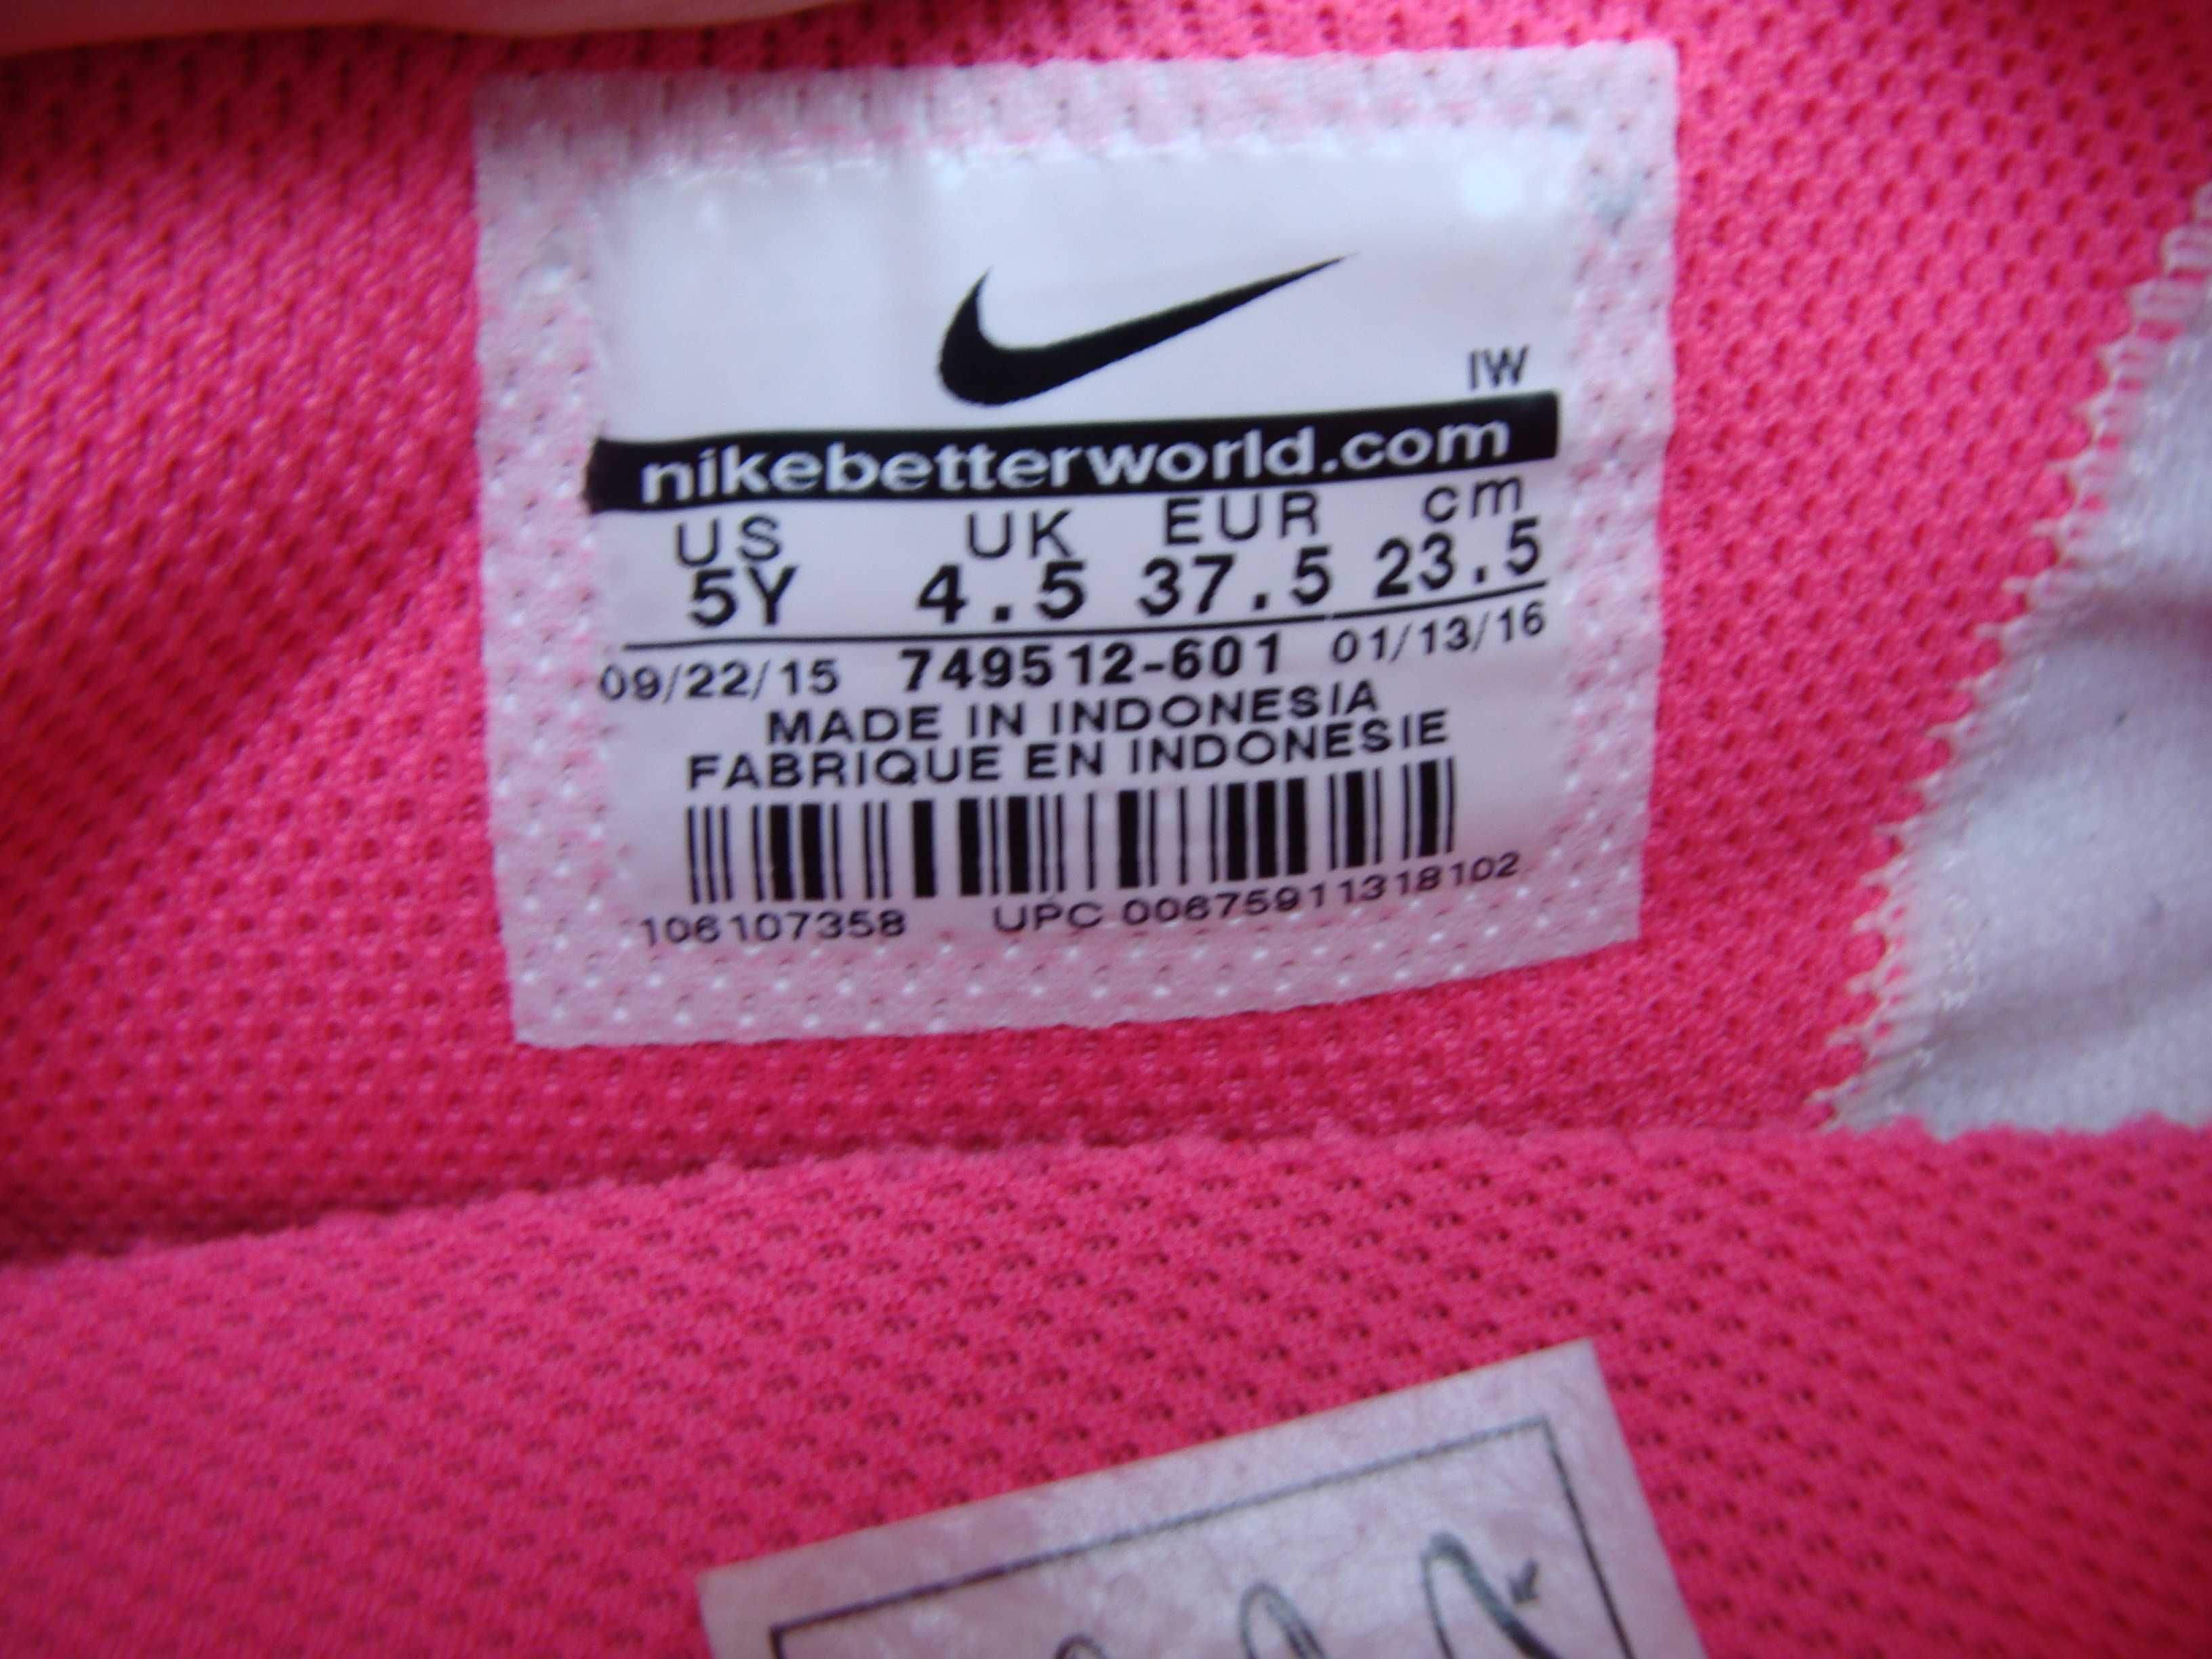 37.5/23.5 см Nike cortez яркие легкие кроссовки оригинал